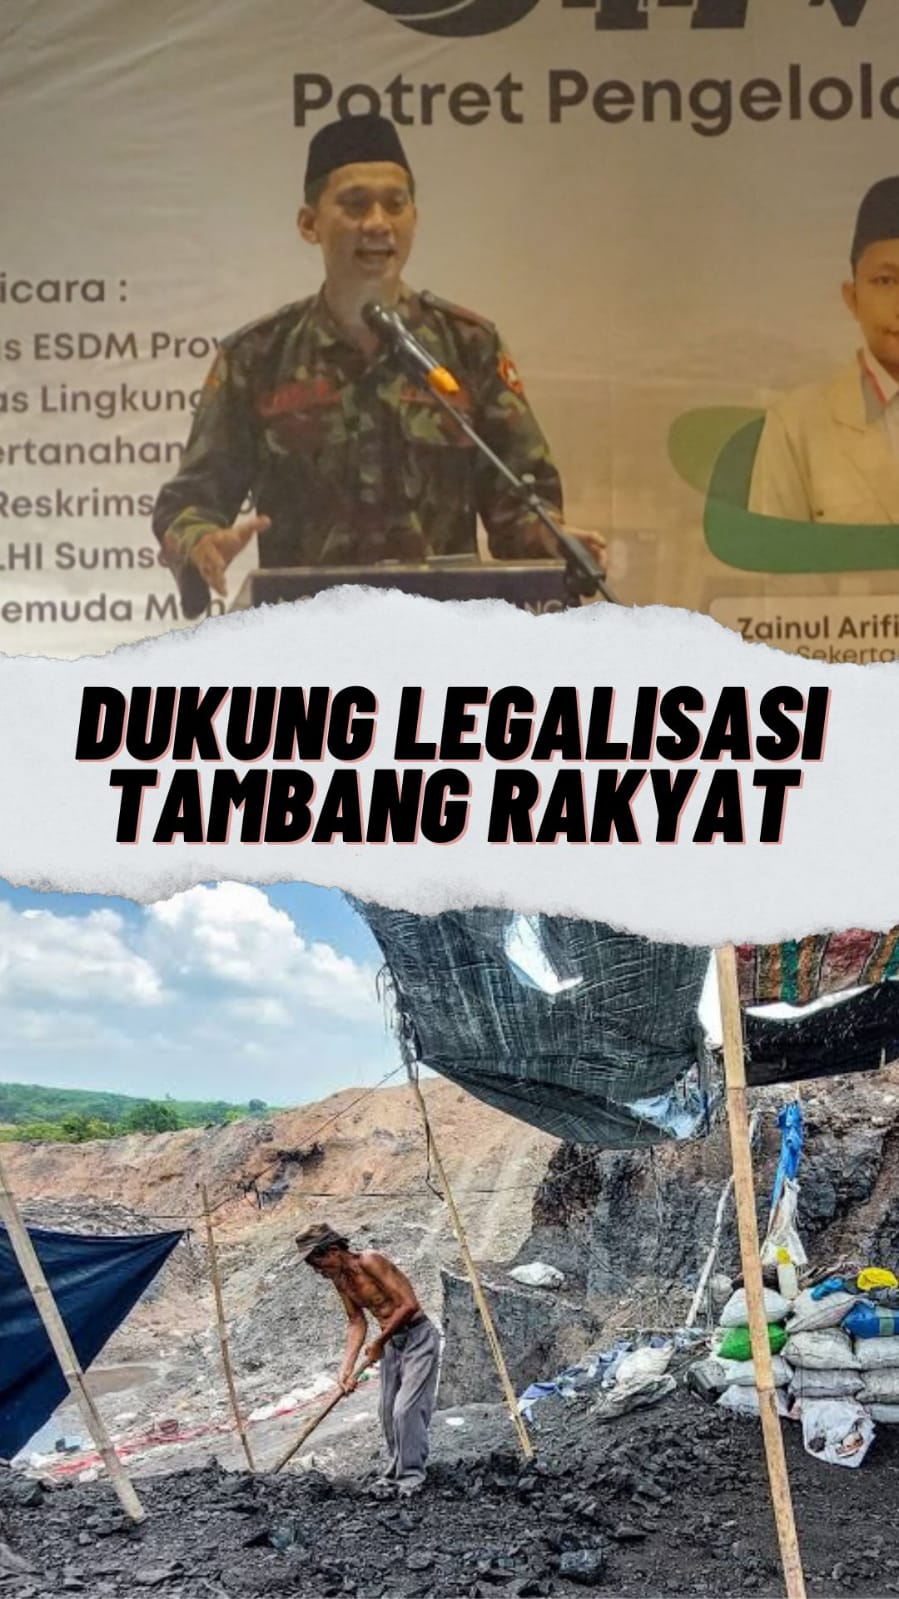 Pemuda Muhammadiyah Kota Palembang Dukung Legalisasi Tambang Rakyat